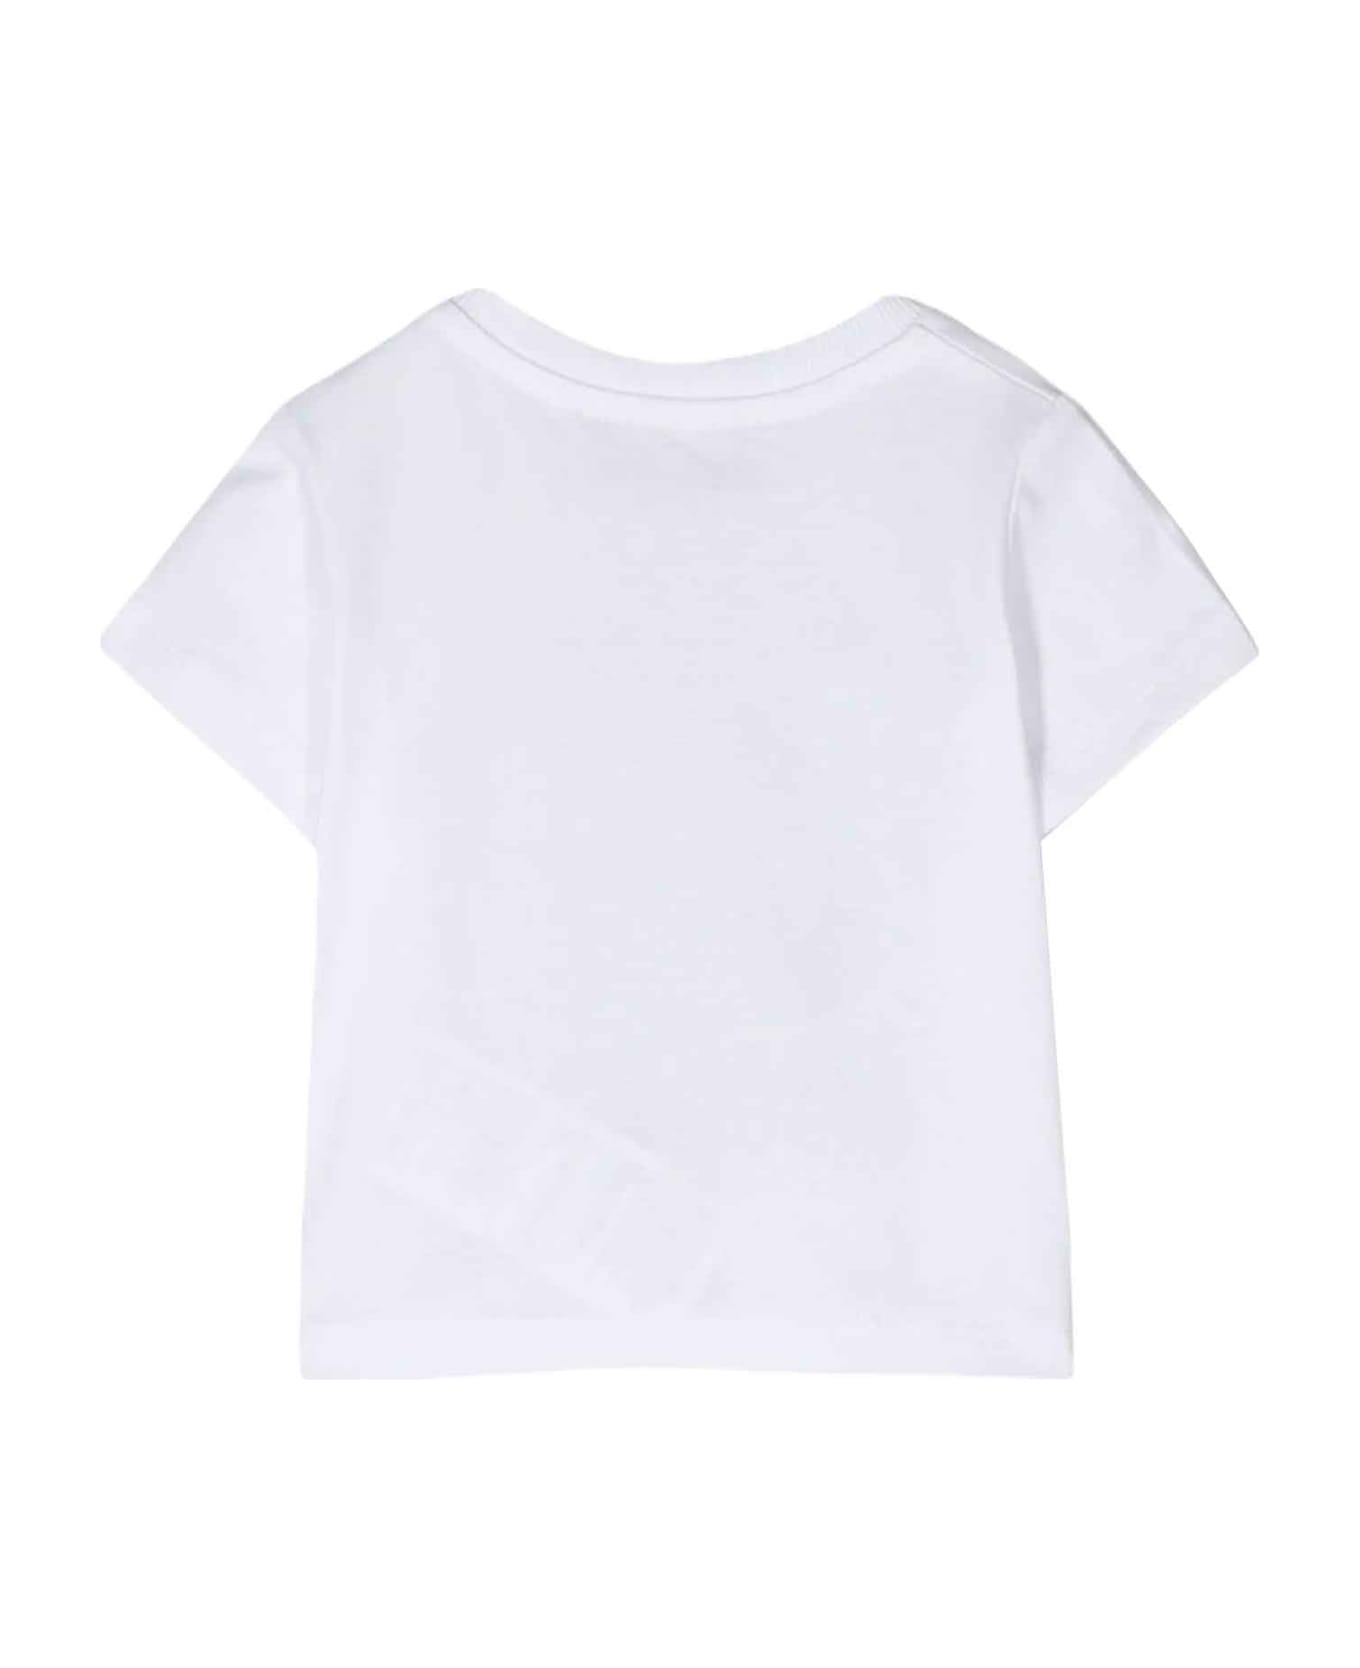 Moschino White T-shirt Baby Unisex - Bianco